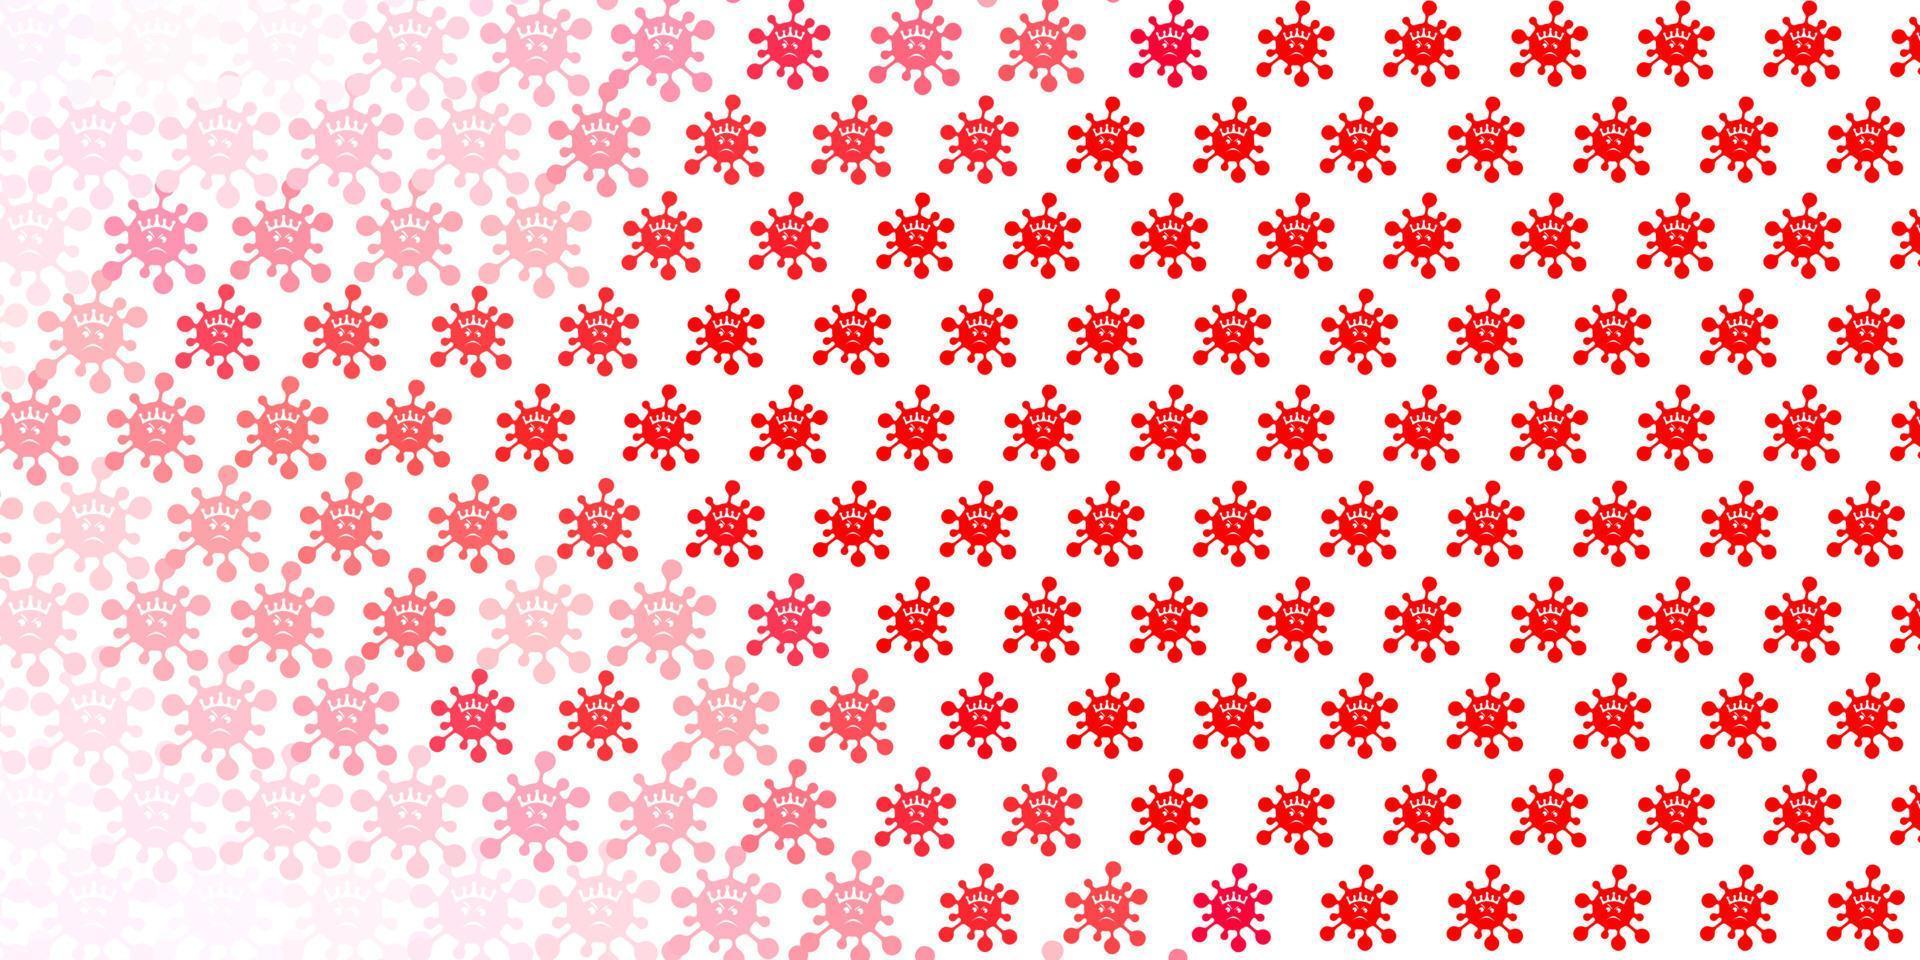 patrón de vector rojo claro con elementos de coronavirus.